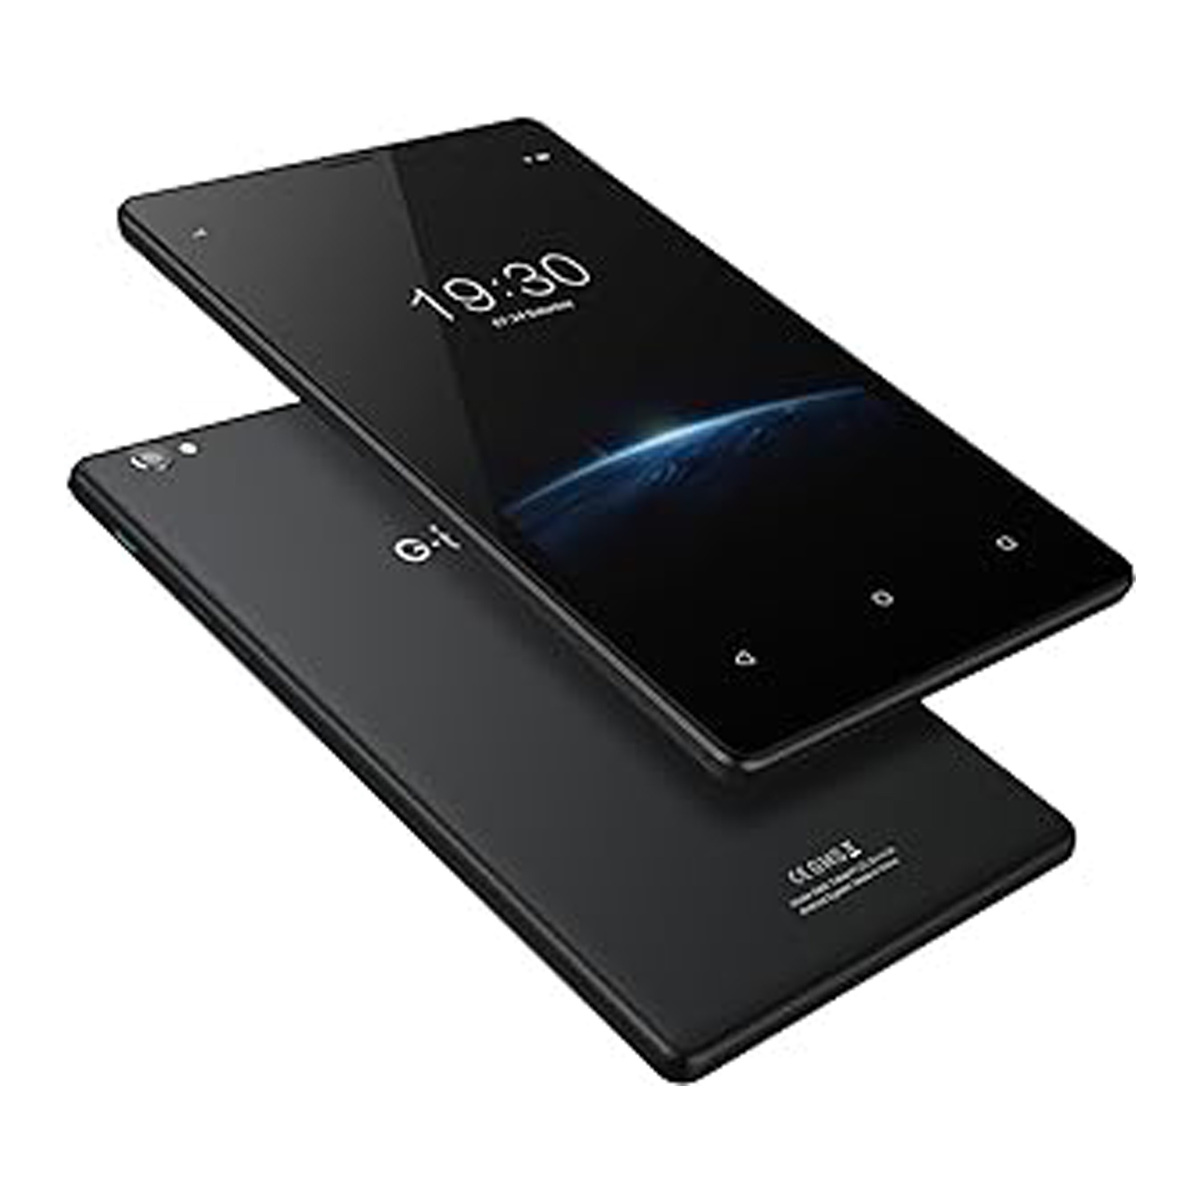 جي تاب S8X جهاز لوحي 4G، شاشة 8 بوصة، 3 جيجابايت رام، 32 جيجابايت تخزين، أسود